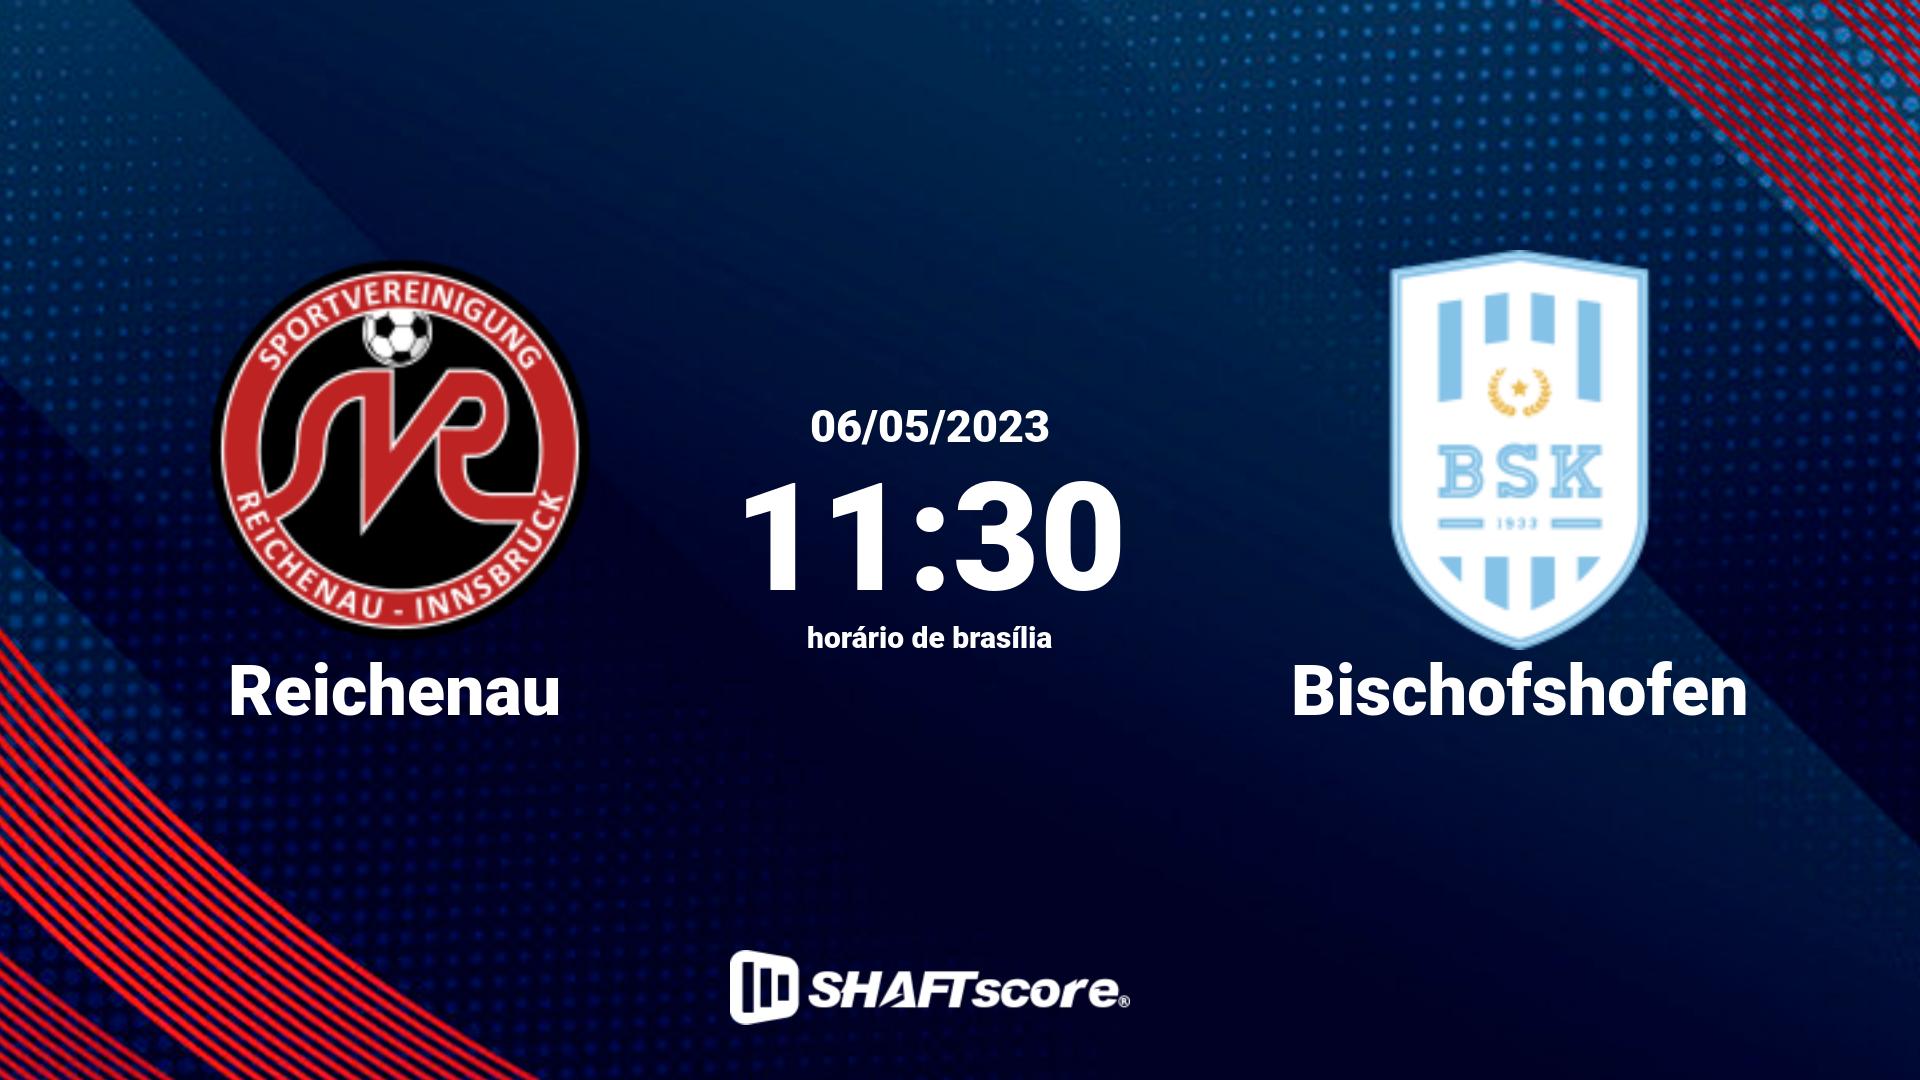 Estatísticas do jogo Reichenau vs Bischofshofen 06.05 11:30